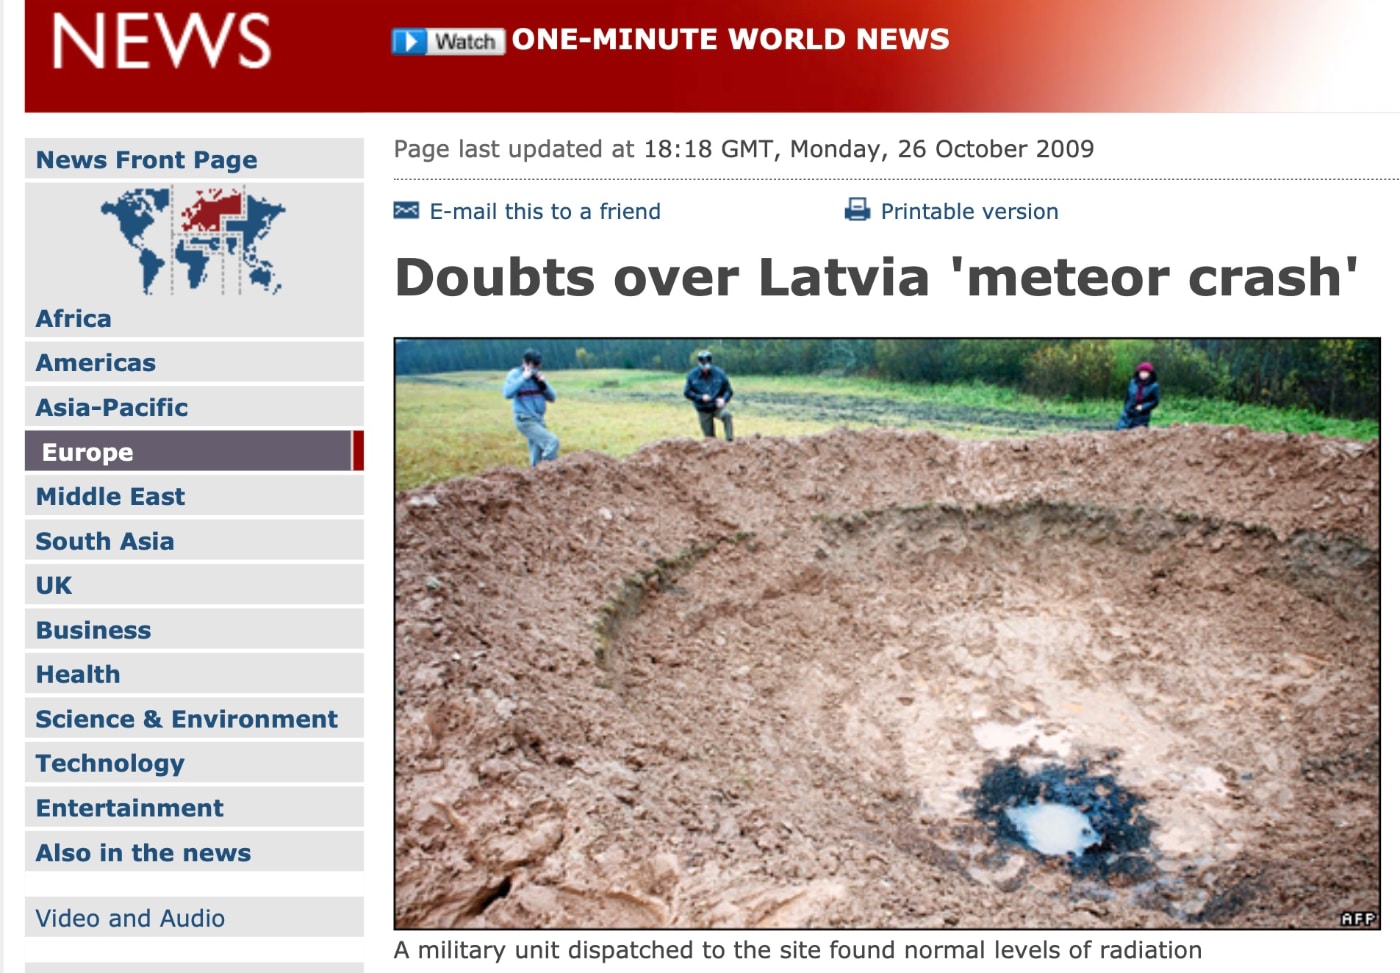 La BBC y otros medios tardaron horas en rectificar y reconocer  que el cráter de meteorito letón era  falso.